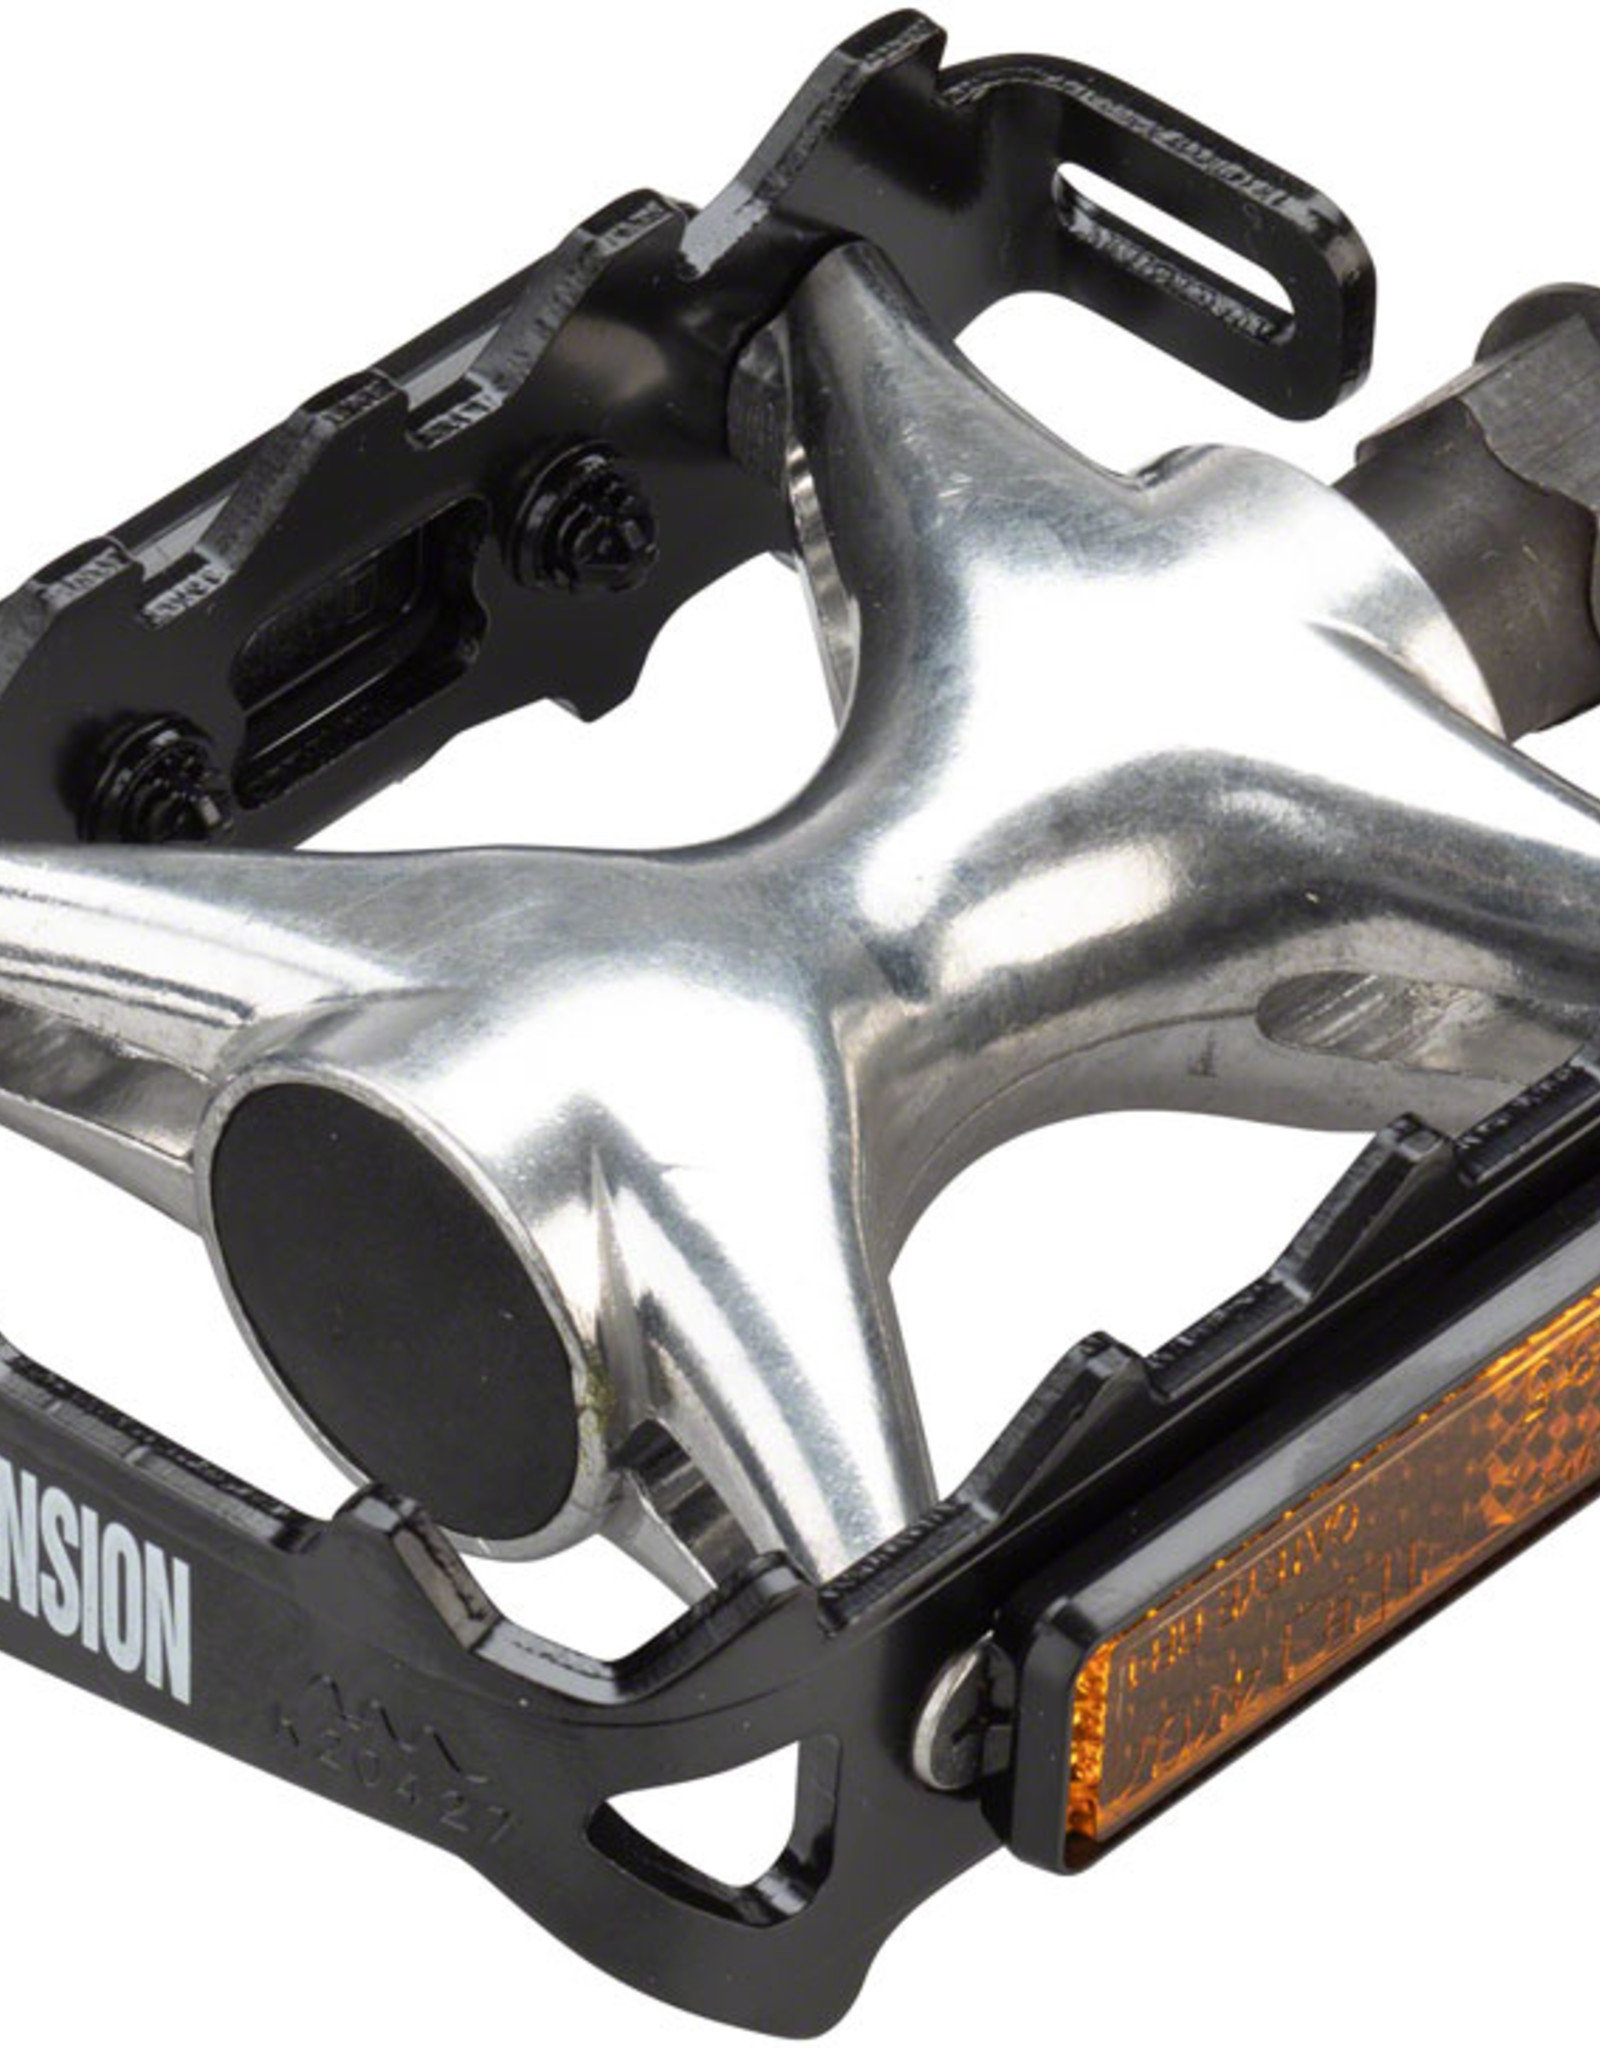 Black/Silver Dimension Mountain Compe Pedals - Platform, Aluminum, 9/16",